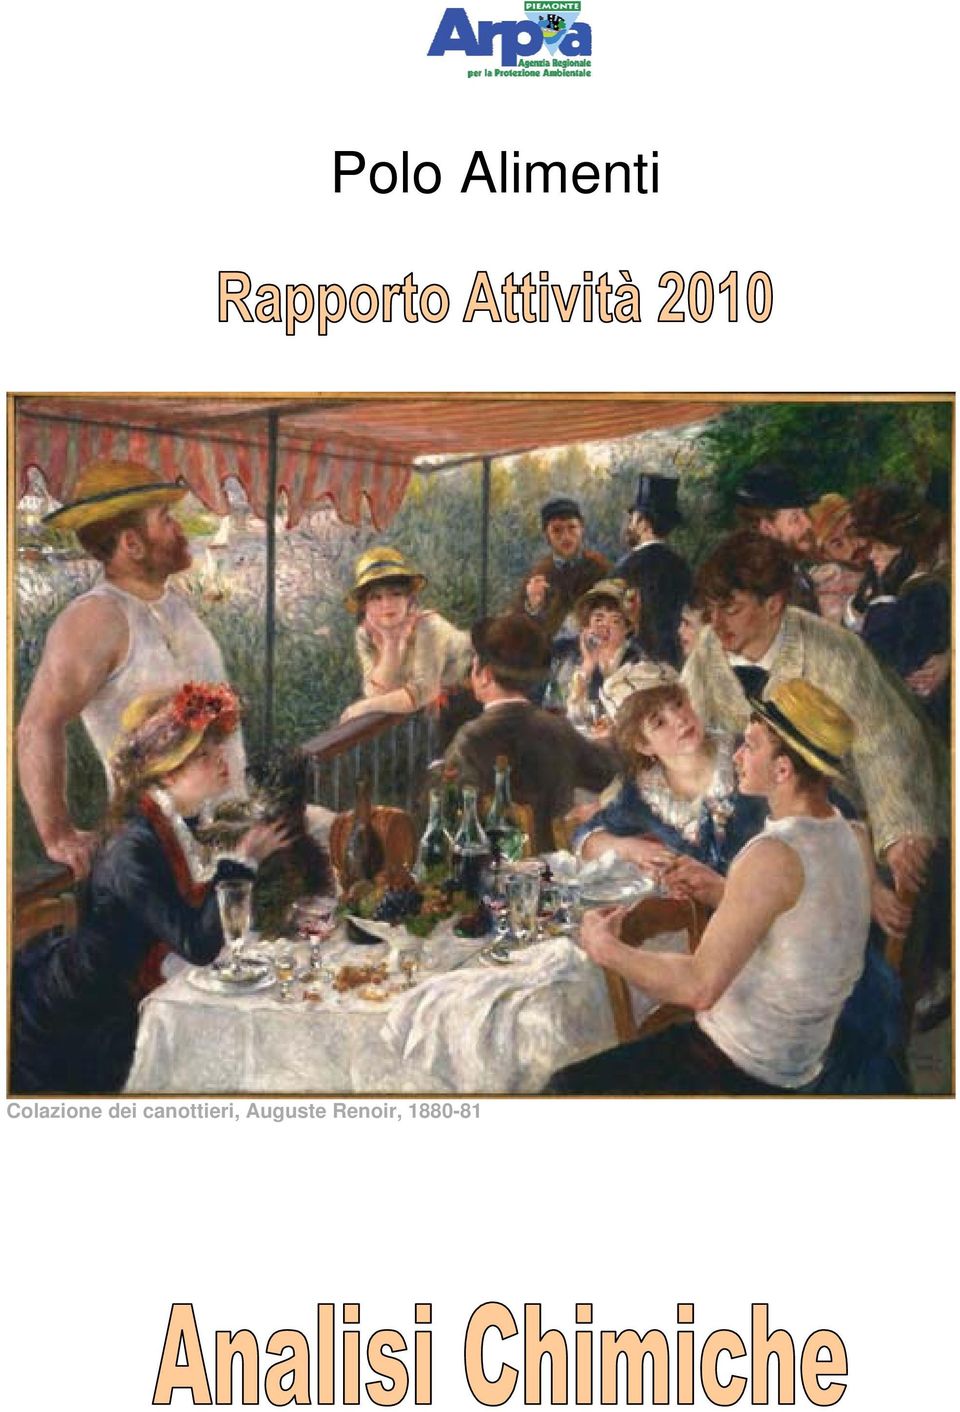 Auguste Renoir,